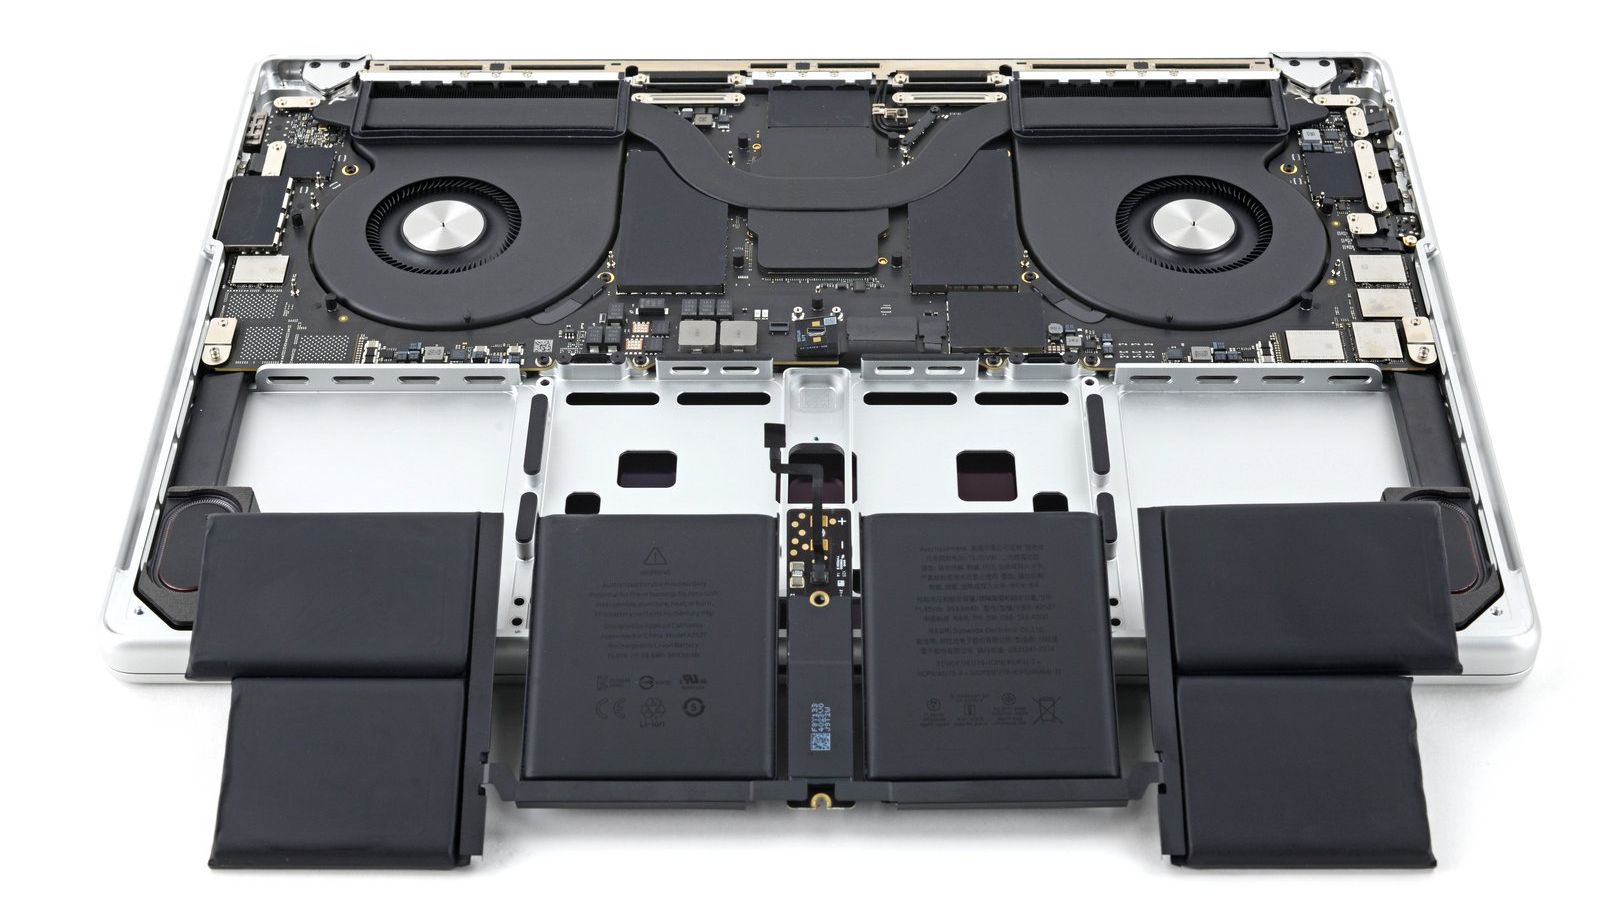 iFixit Says Apple's DIY Repair Program Makes MacBooks 'Seem Less Repairable'